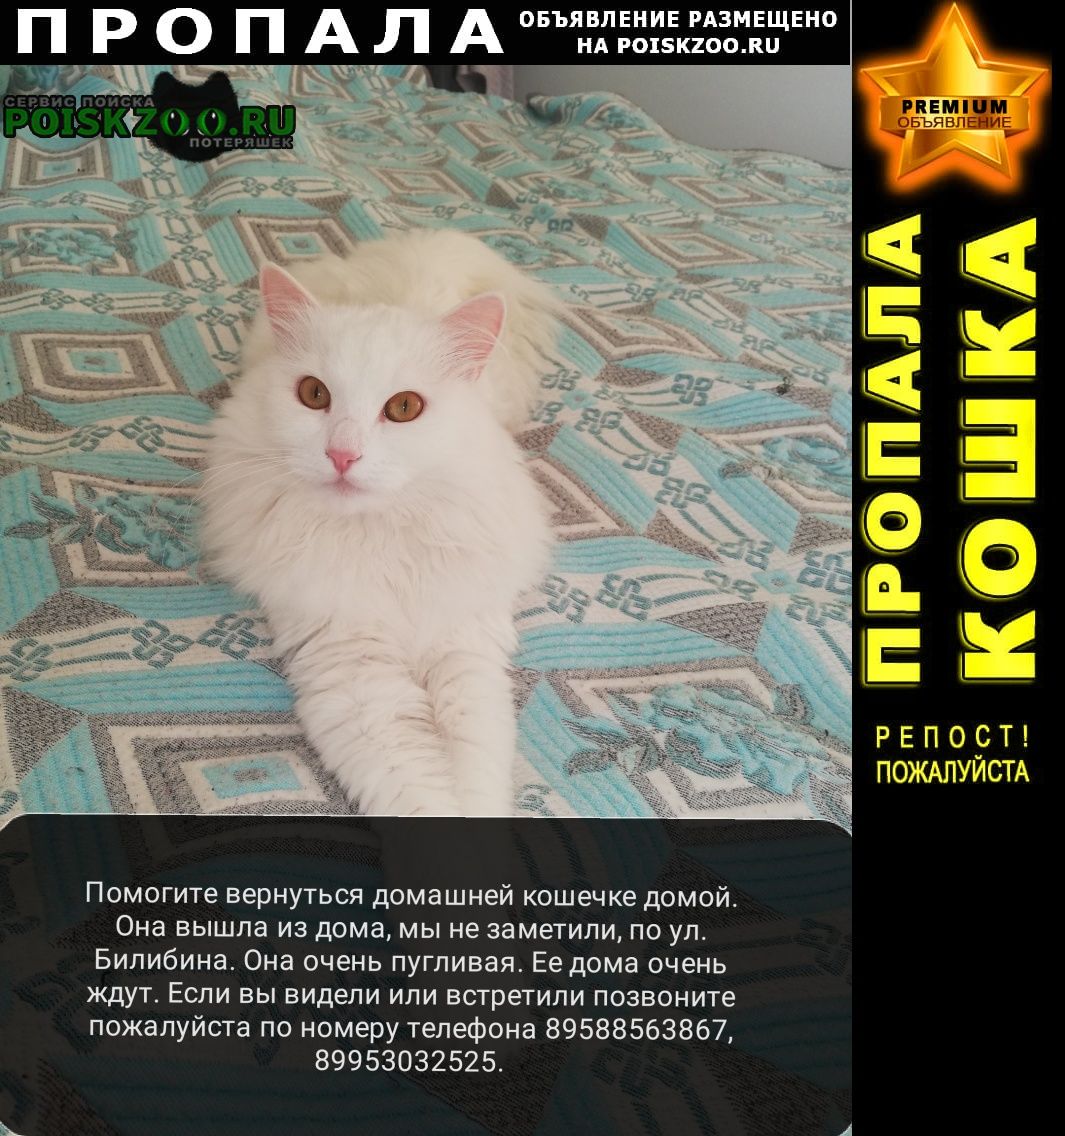 Калининград (Кенигсберг) Пропала кошка помогите вернуться кошечке домой